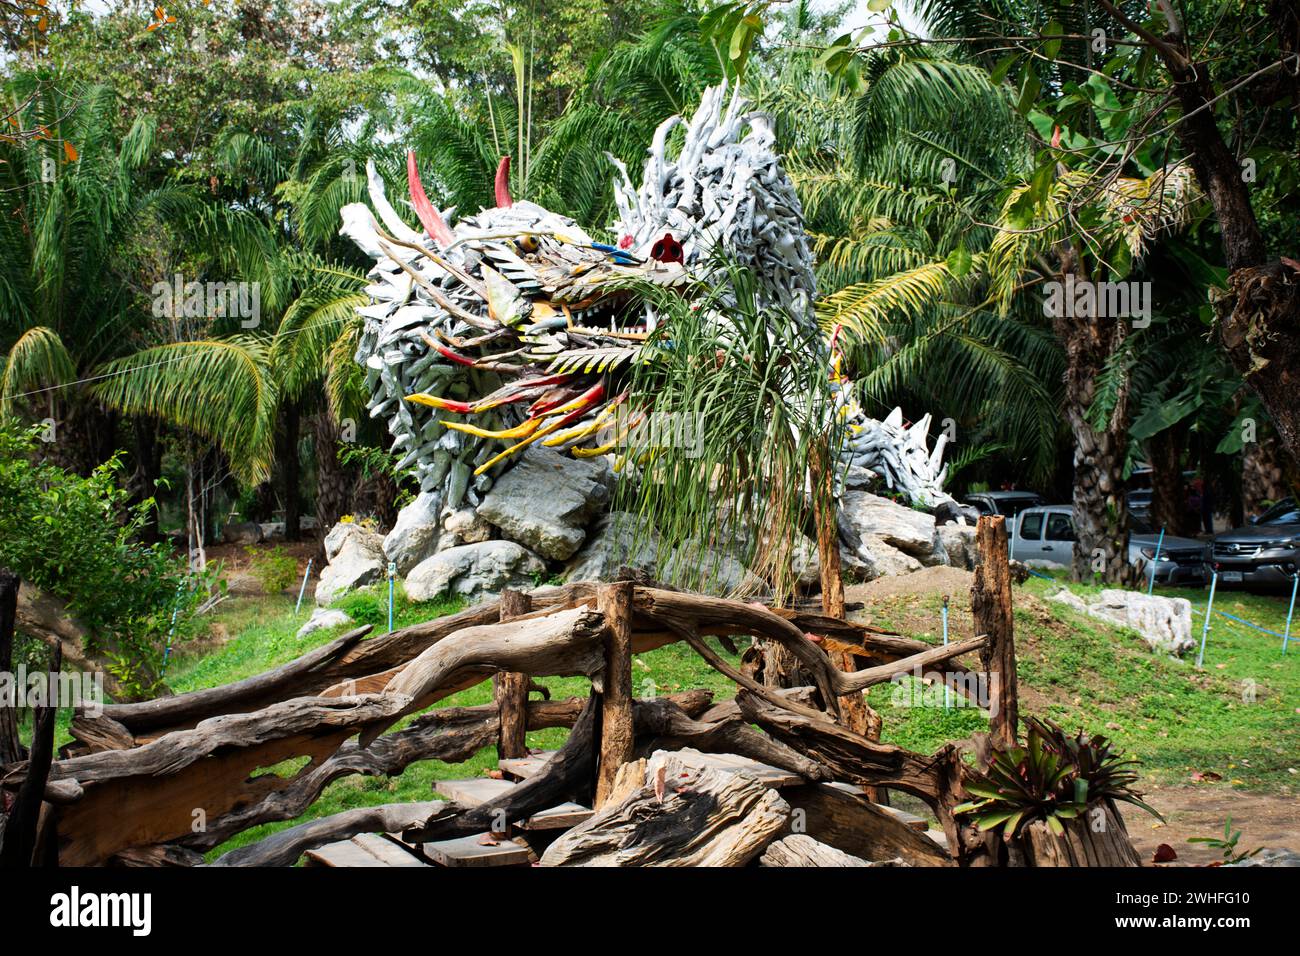 Kunstskulptur Schnitzerei hölzerne chinesische alte Drachen und Holz antike Schlangennaga im Garten Park für thailänder Reise Besuch des Wat Tham Khao Stockfoto